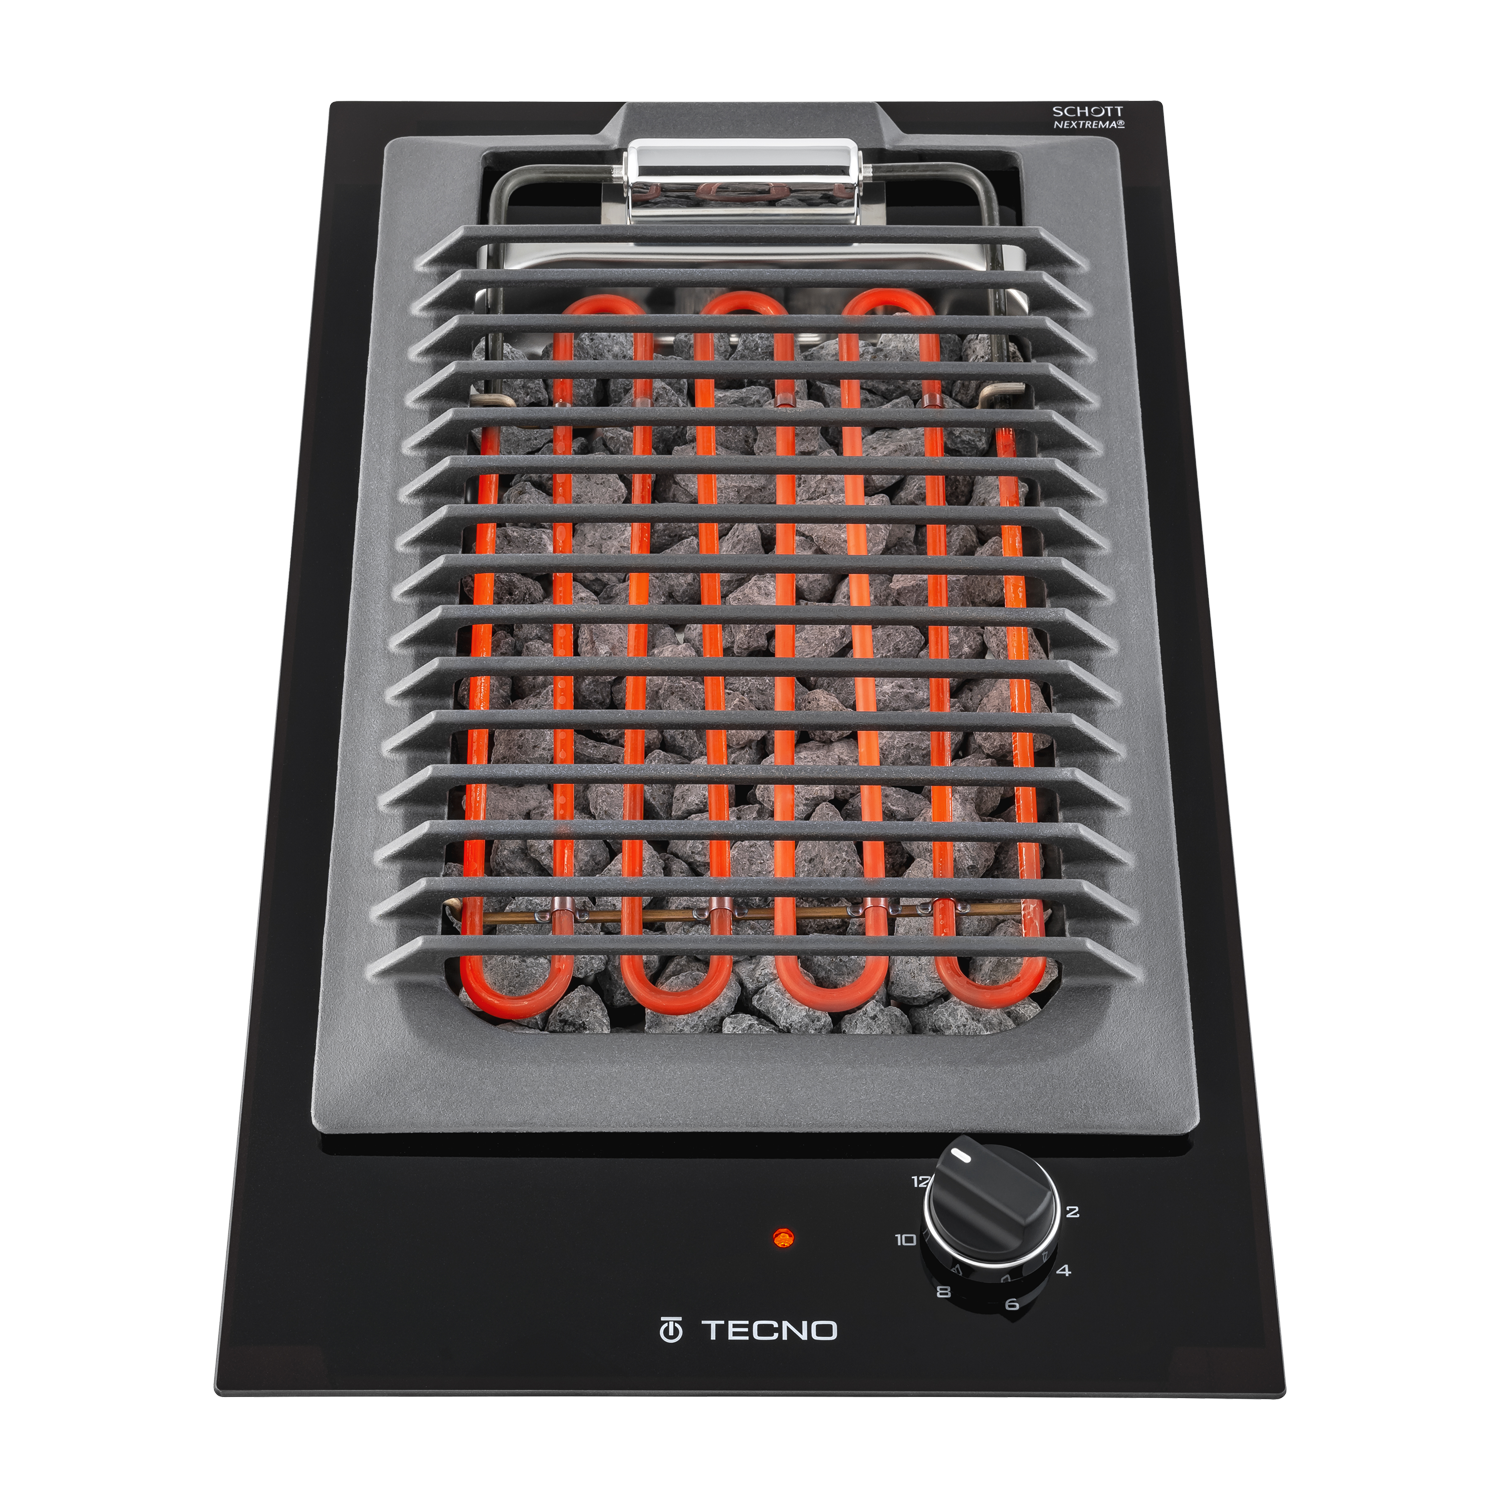 domino-eletrico-tecno-barbecue-30-cm-vitroceramico-baixo